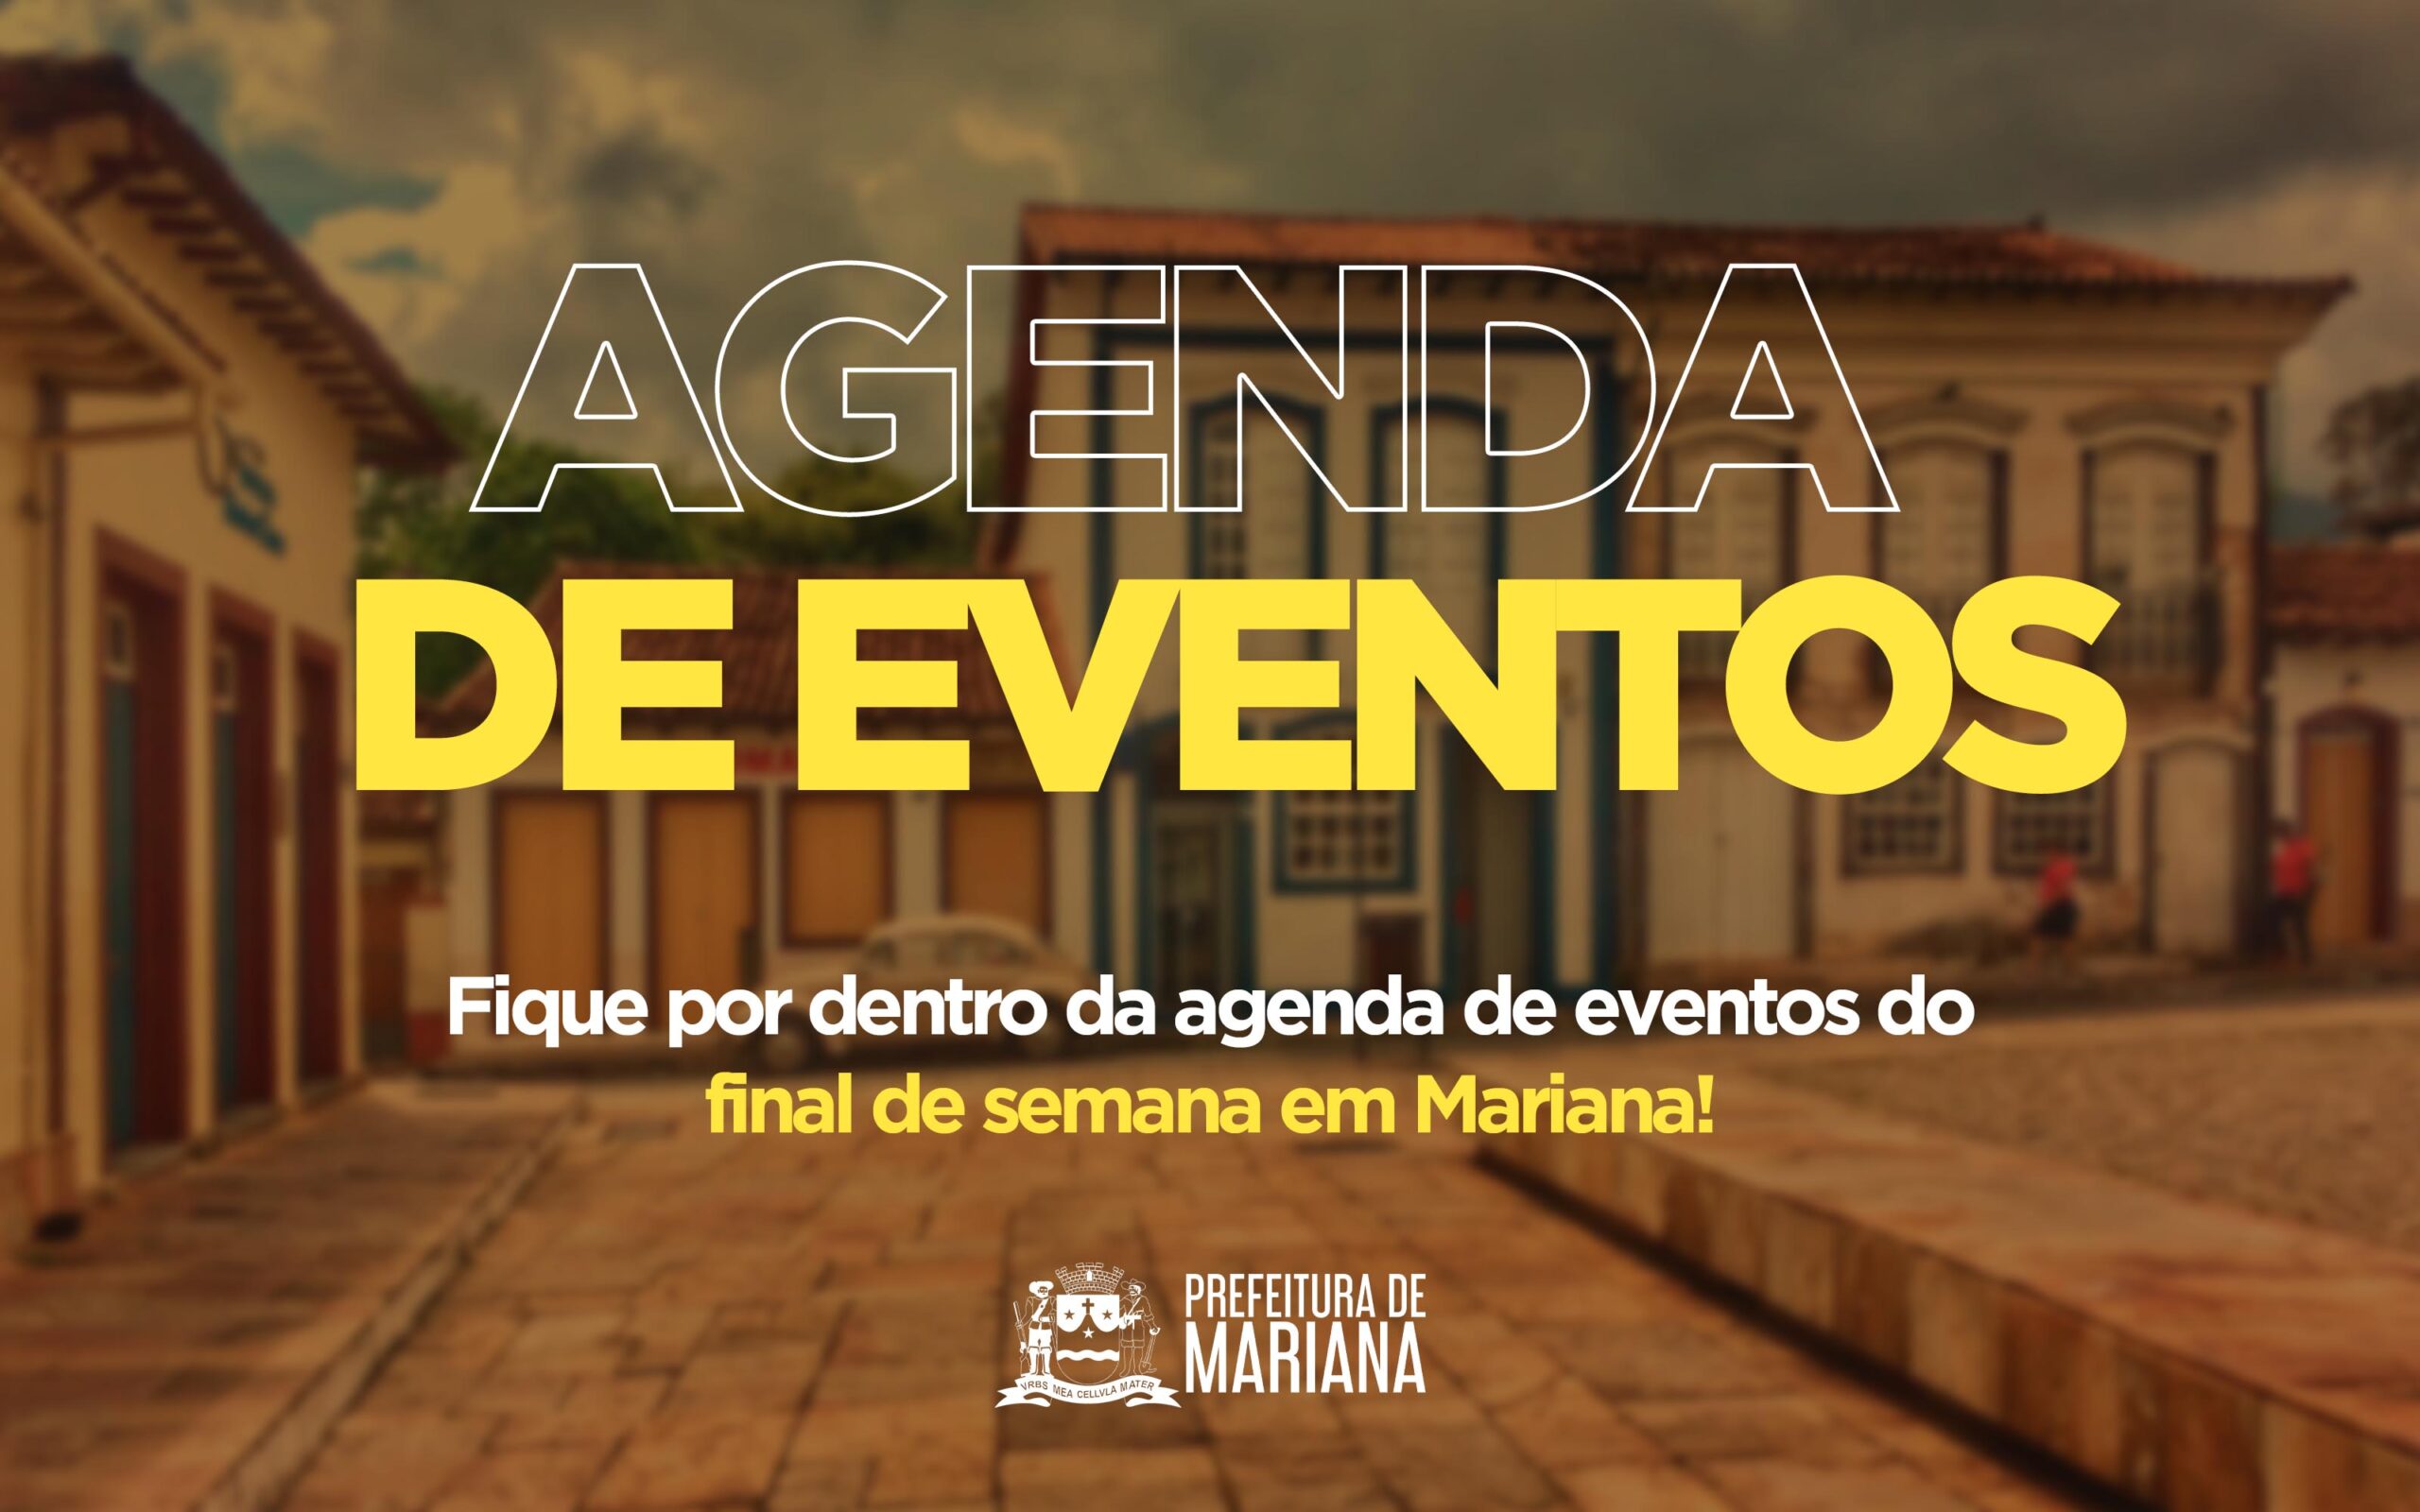 Agenda eventos do final de semana em Mariana-MG